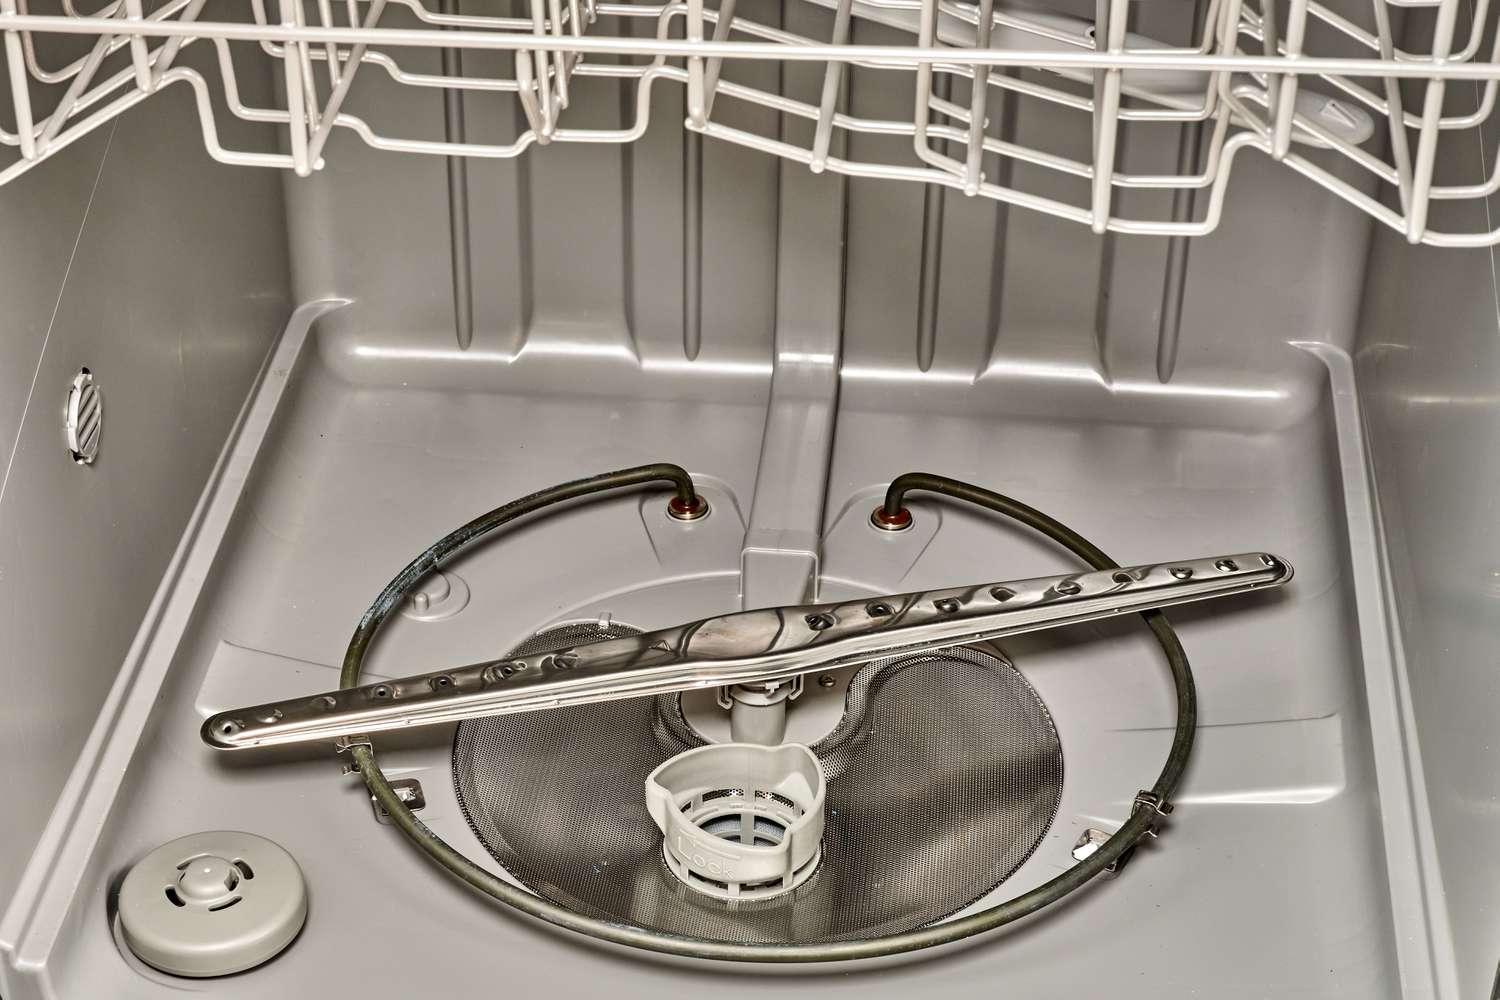 Exigences relatives à la vidange du lave-vaisselle